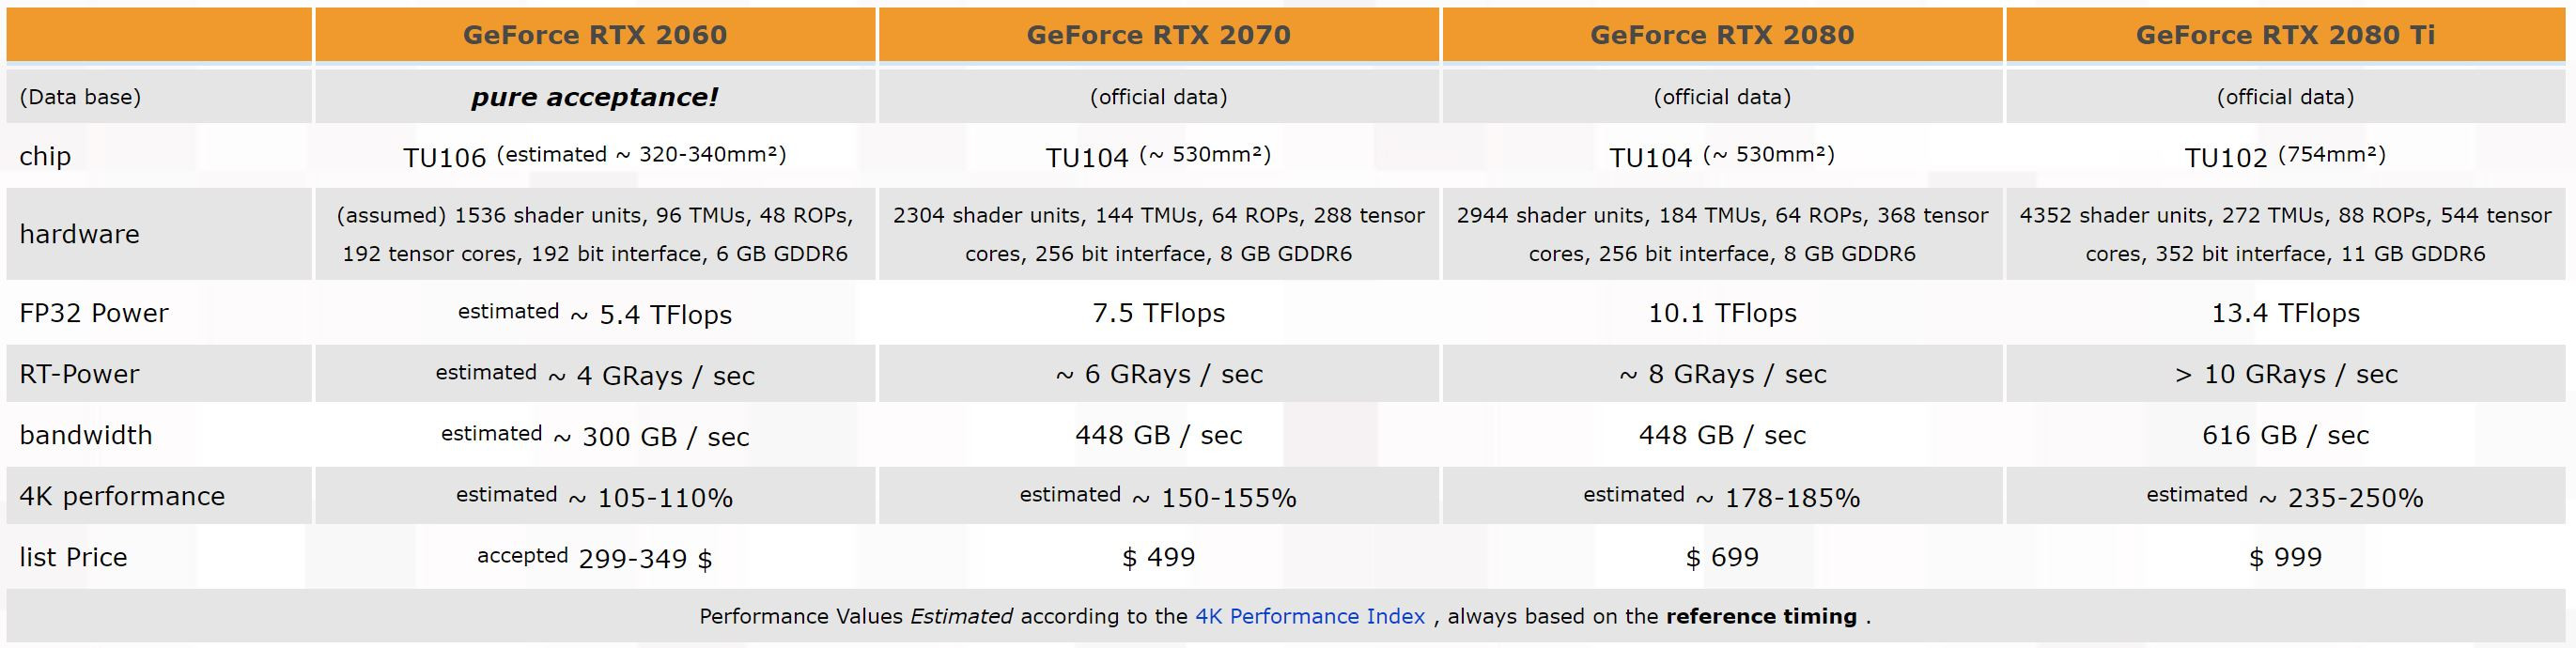 fksuud8meenknheh พบข้อมูลชิบ GPU รหัส TU106 ของทาง NVIDIA ปรากฏในโปรแกรม HWiNFO คาดว่าเป็น GeForce RTX 2060 ที่น่าจะเปิดตัวเร็วๆนี้